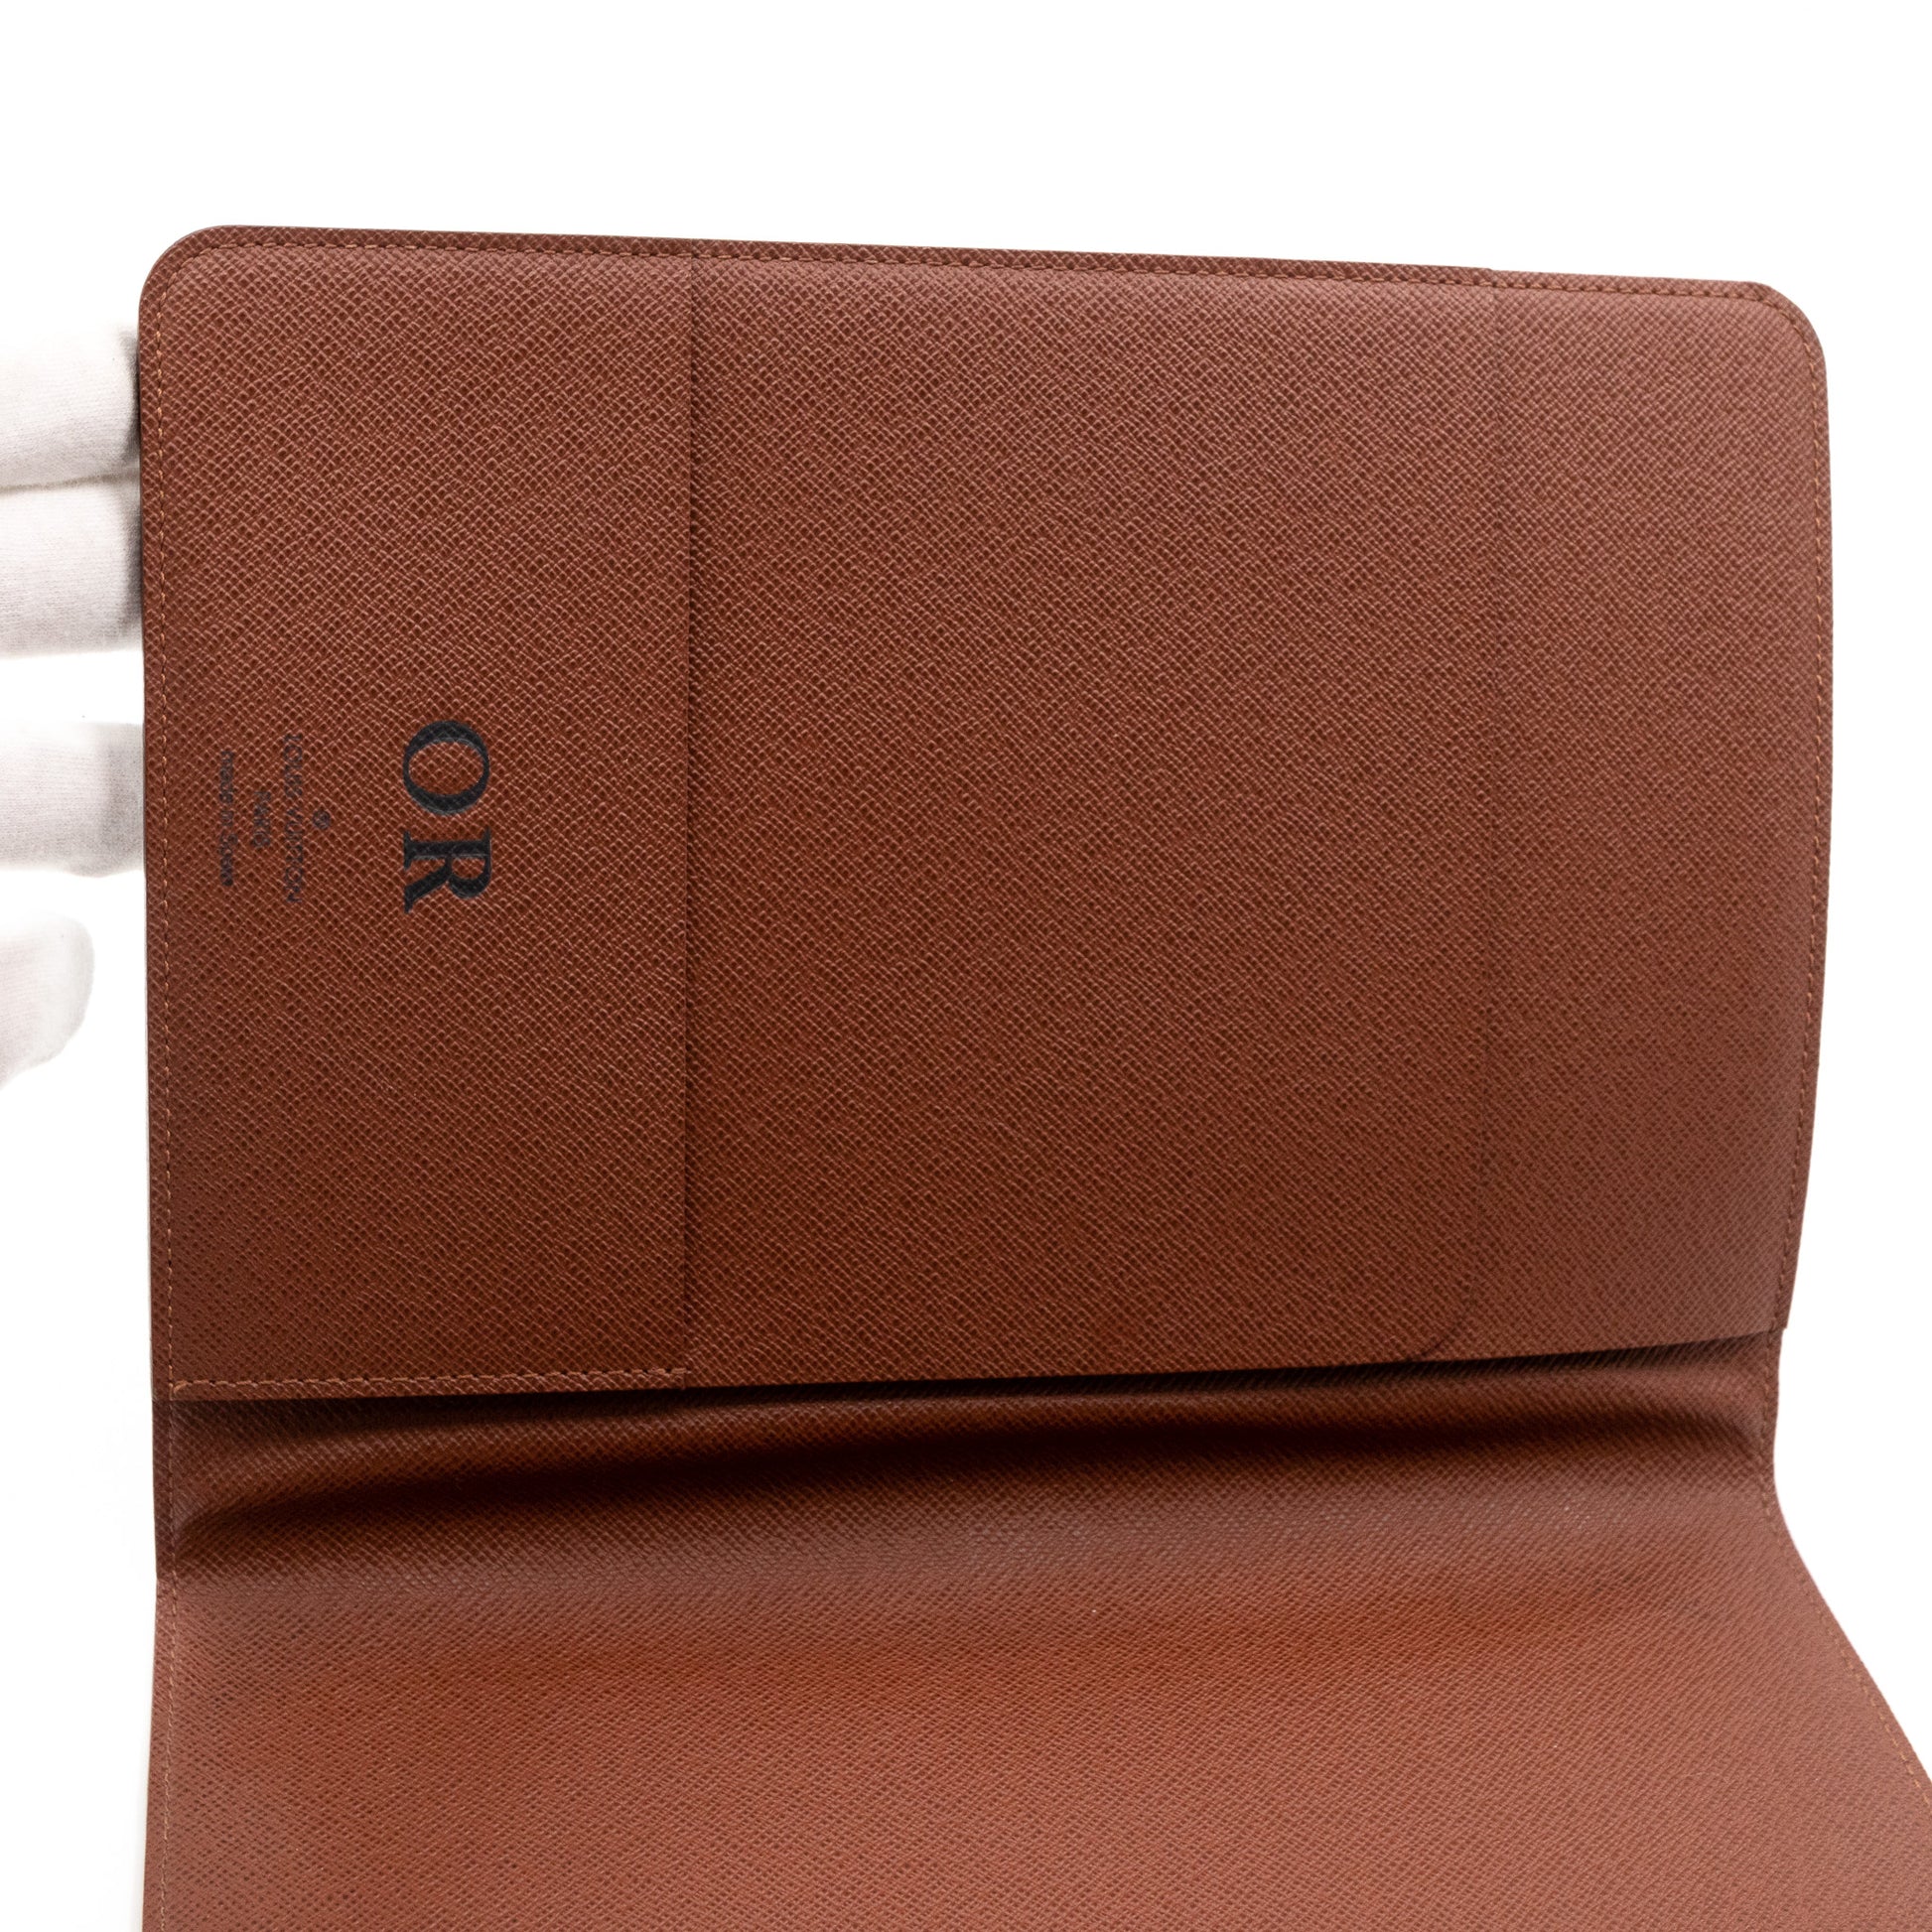 Louis Vuitton Desk Agenda cover - Good or Bag